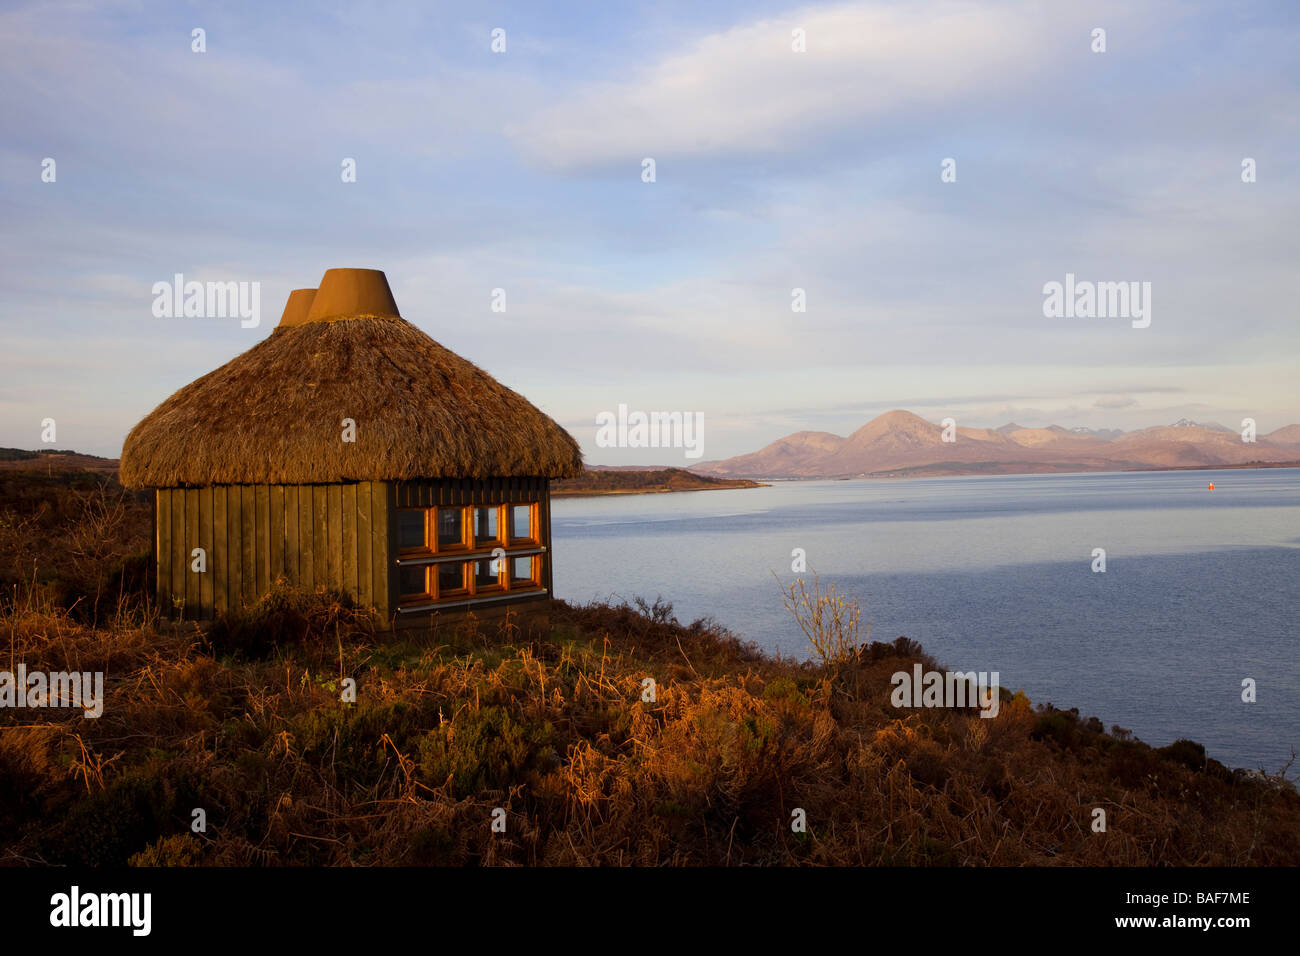 Scottish Bird-Watchers thatched landes en bois observation de la faune cachette surplombant Eileanan Dubha, Loch Alsh, île de Skye, Écosse, Royaume-Uni Banque D'Images